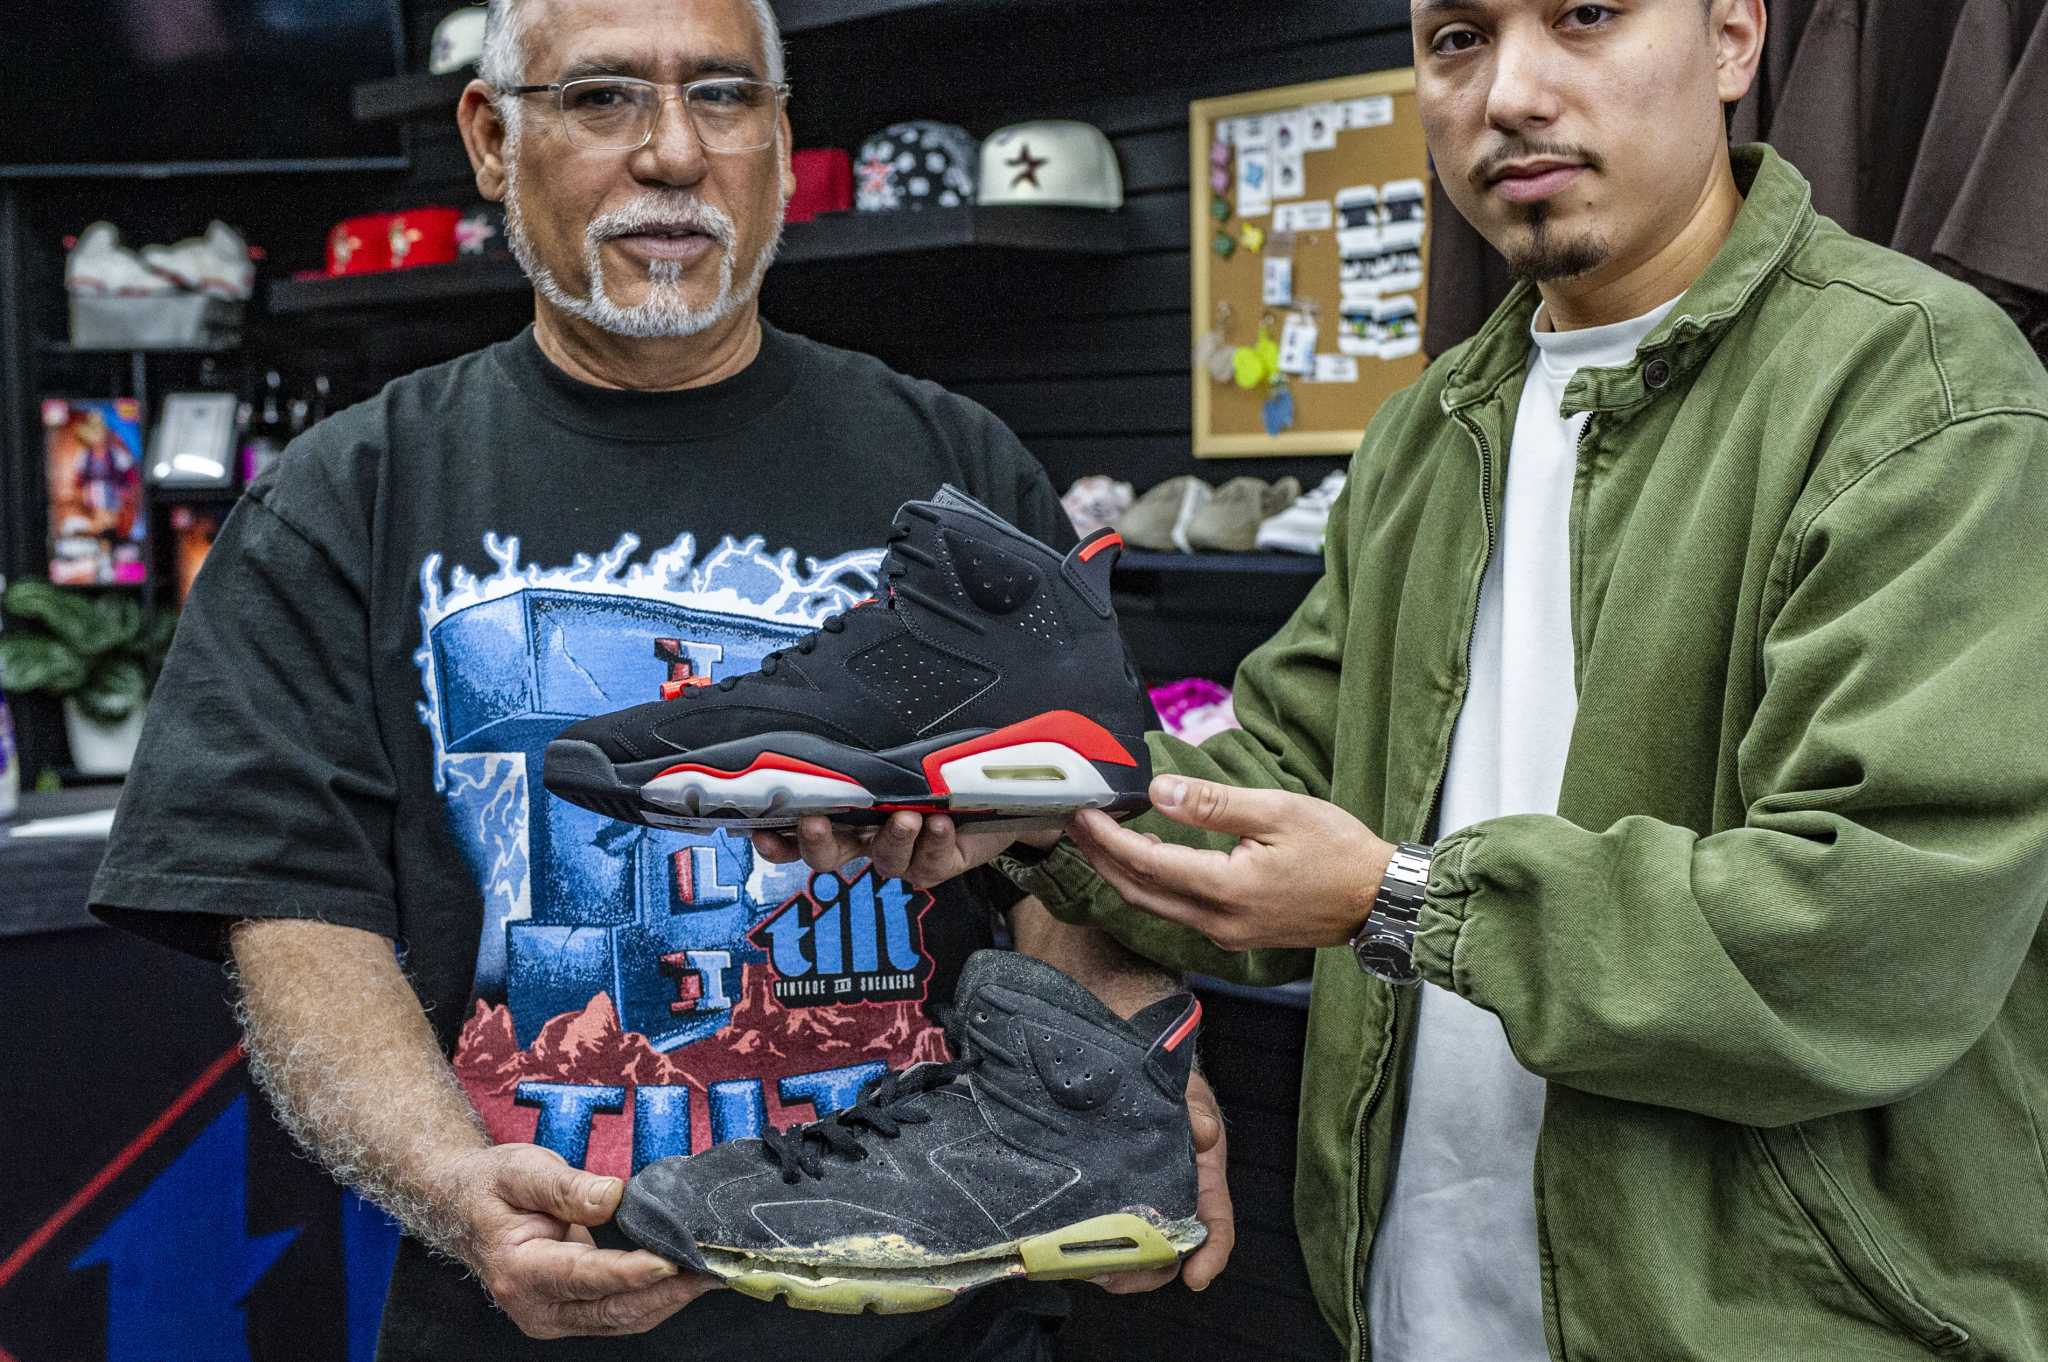 Pasadena vintage shop brings in rare Nikes, $1K Spiderman shirts